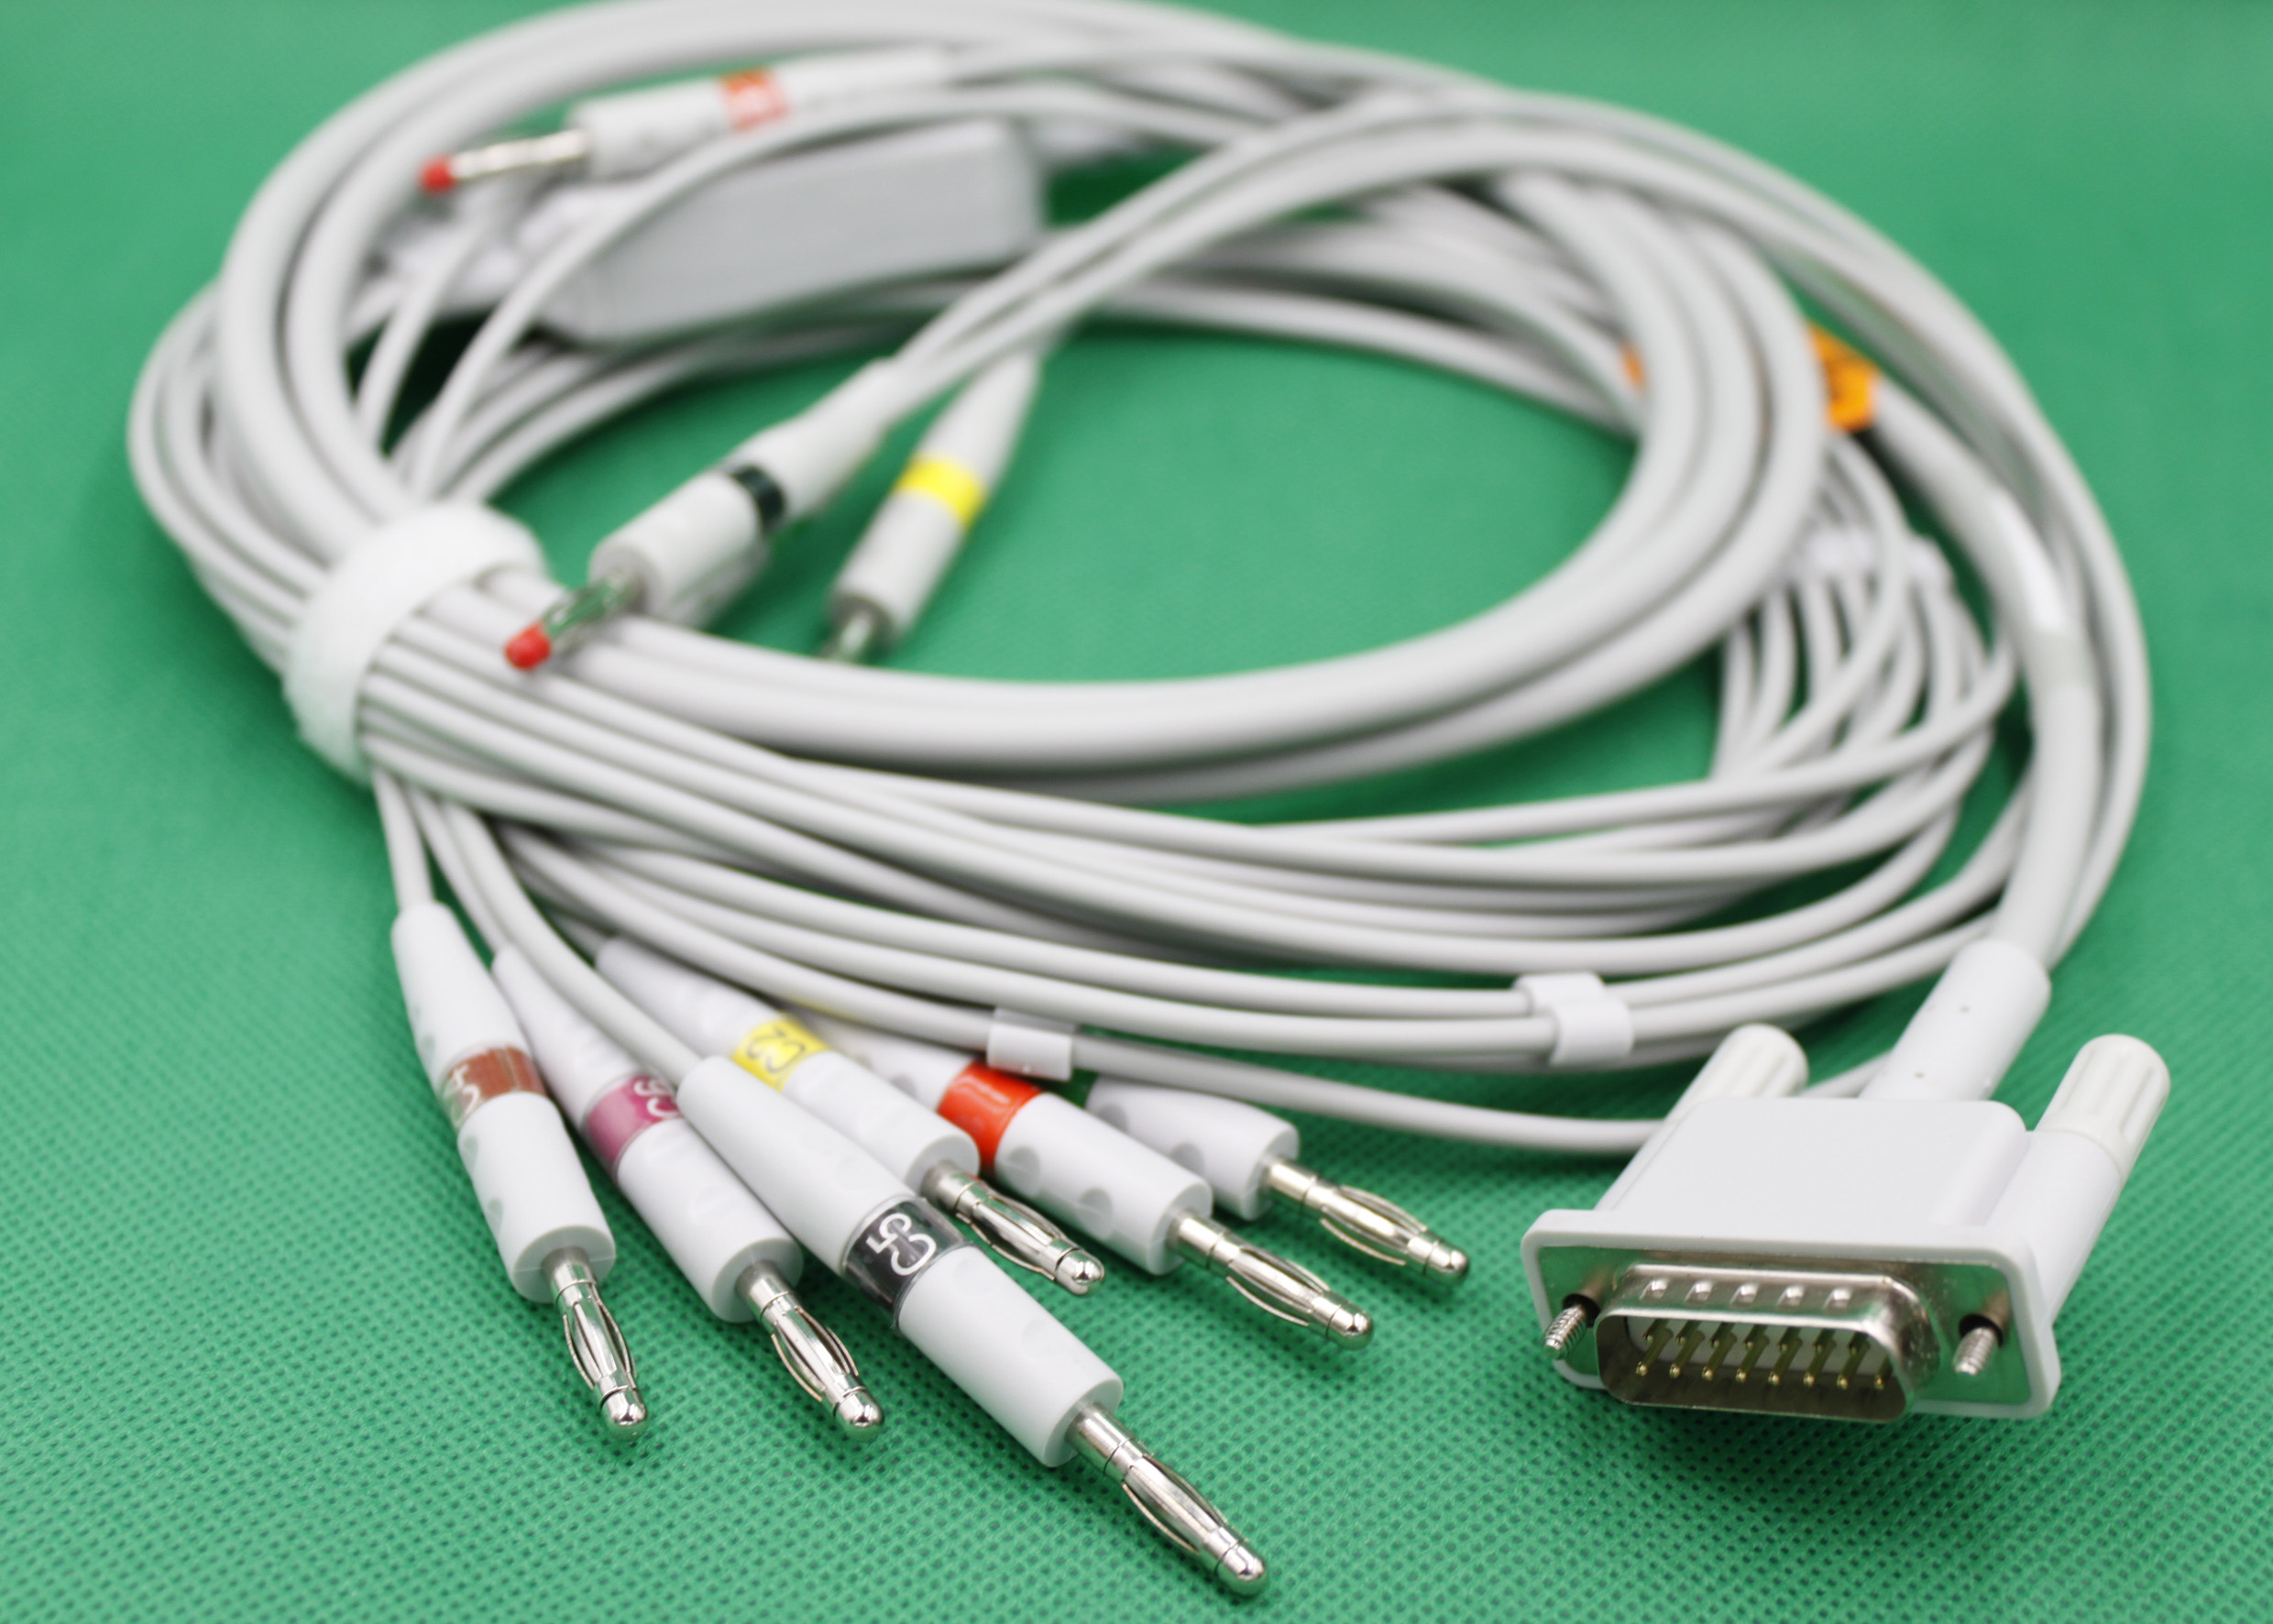 ЭКГ кабель пациента для CARDIORAPID CAMINA K111, K112, K33, K36, K300 M, K300 P, K600 P, K600 D, K130 B, K 130 D